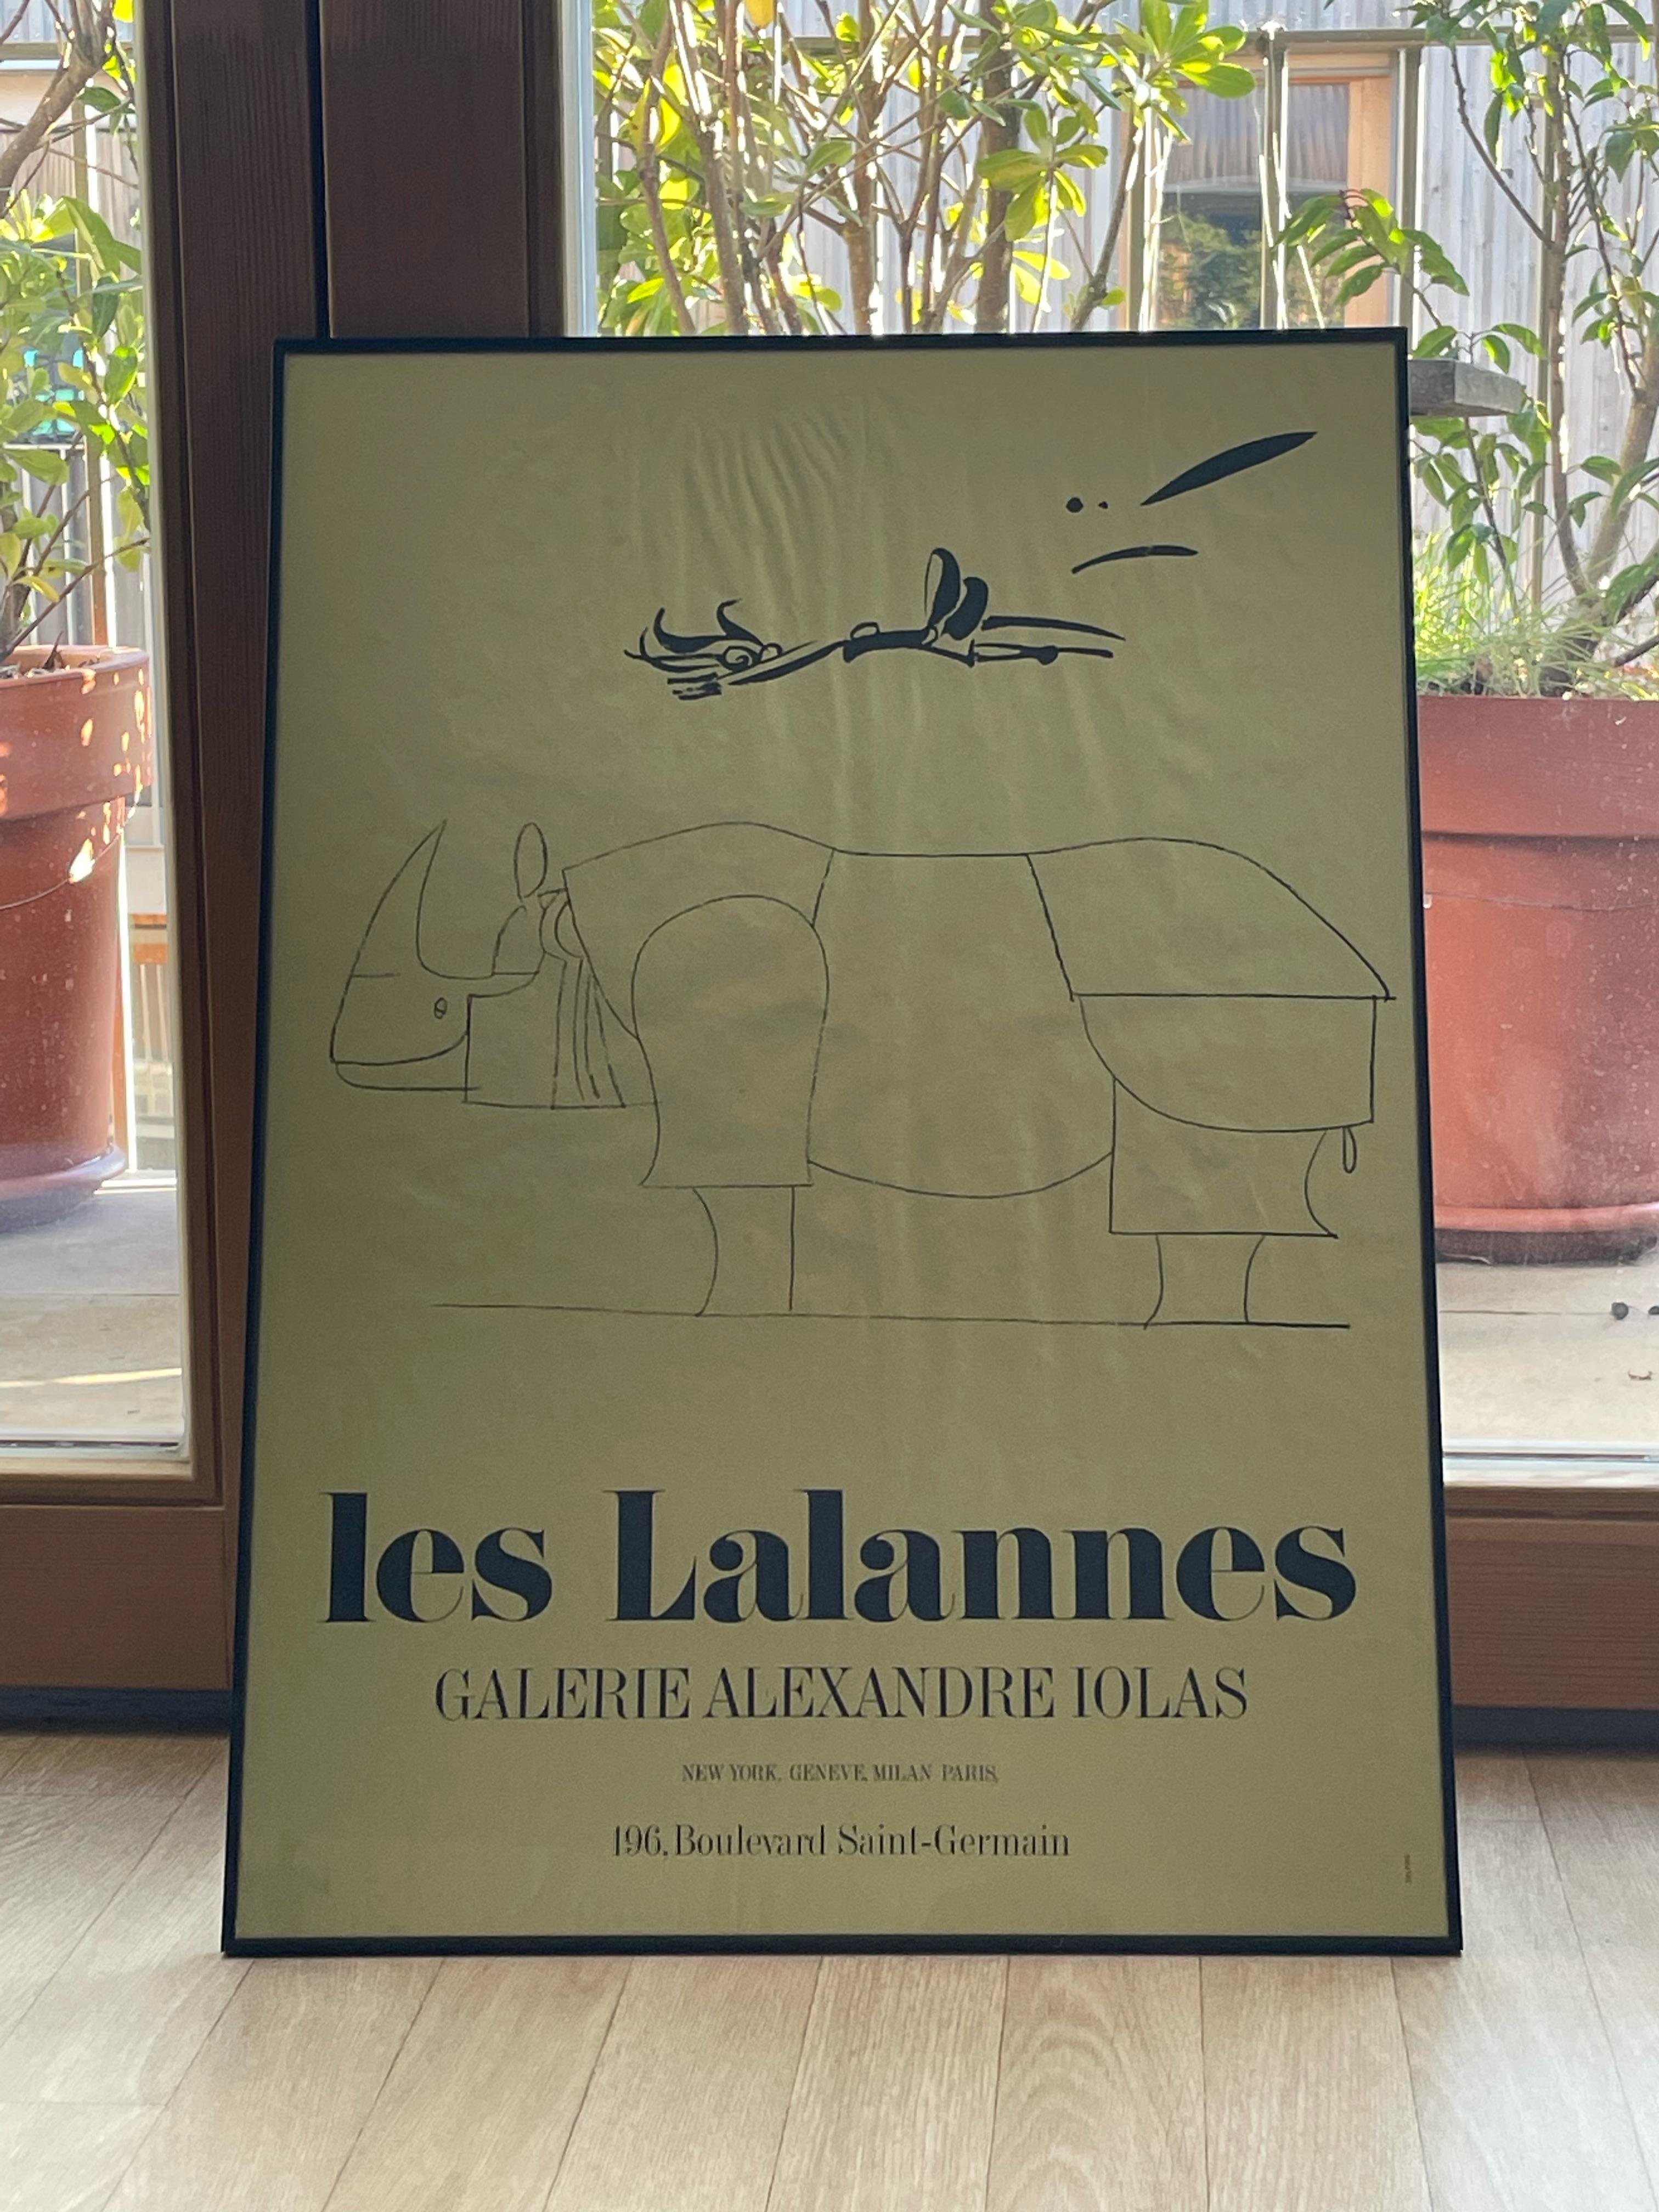 François-Xavier Lalanne (1927-2008) Rhinocéros (également connu sous le nom de Rhinocrétaire)
 
Très rare affiche pour la galerie Alexandre Iolas, imprimée sur papier doré, années 1970, très bon état.
Dimensions du papier : 70 x 50 cm (27,56 x 19,68